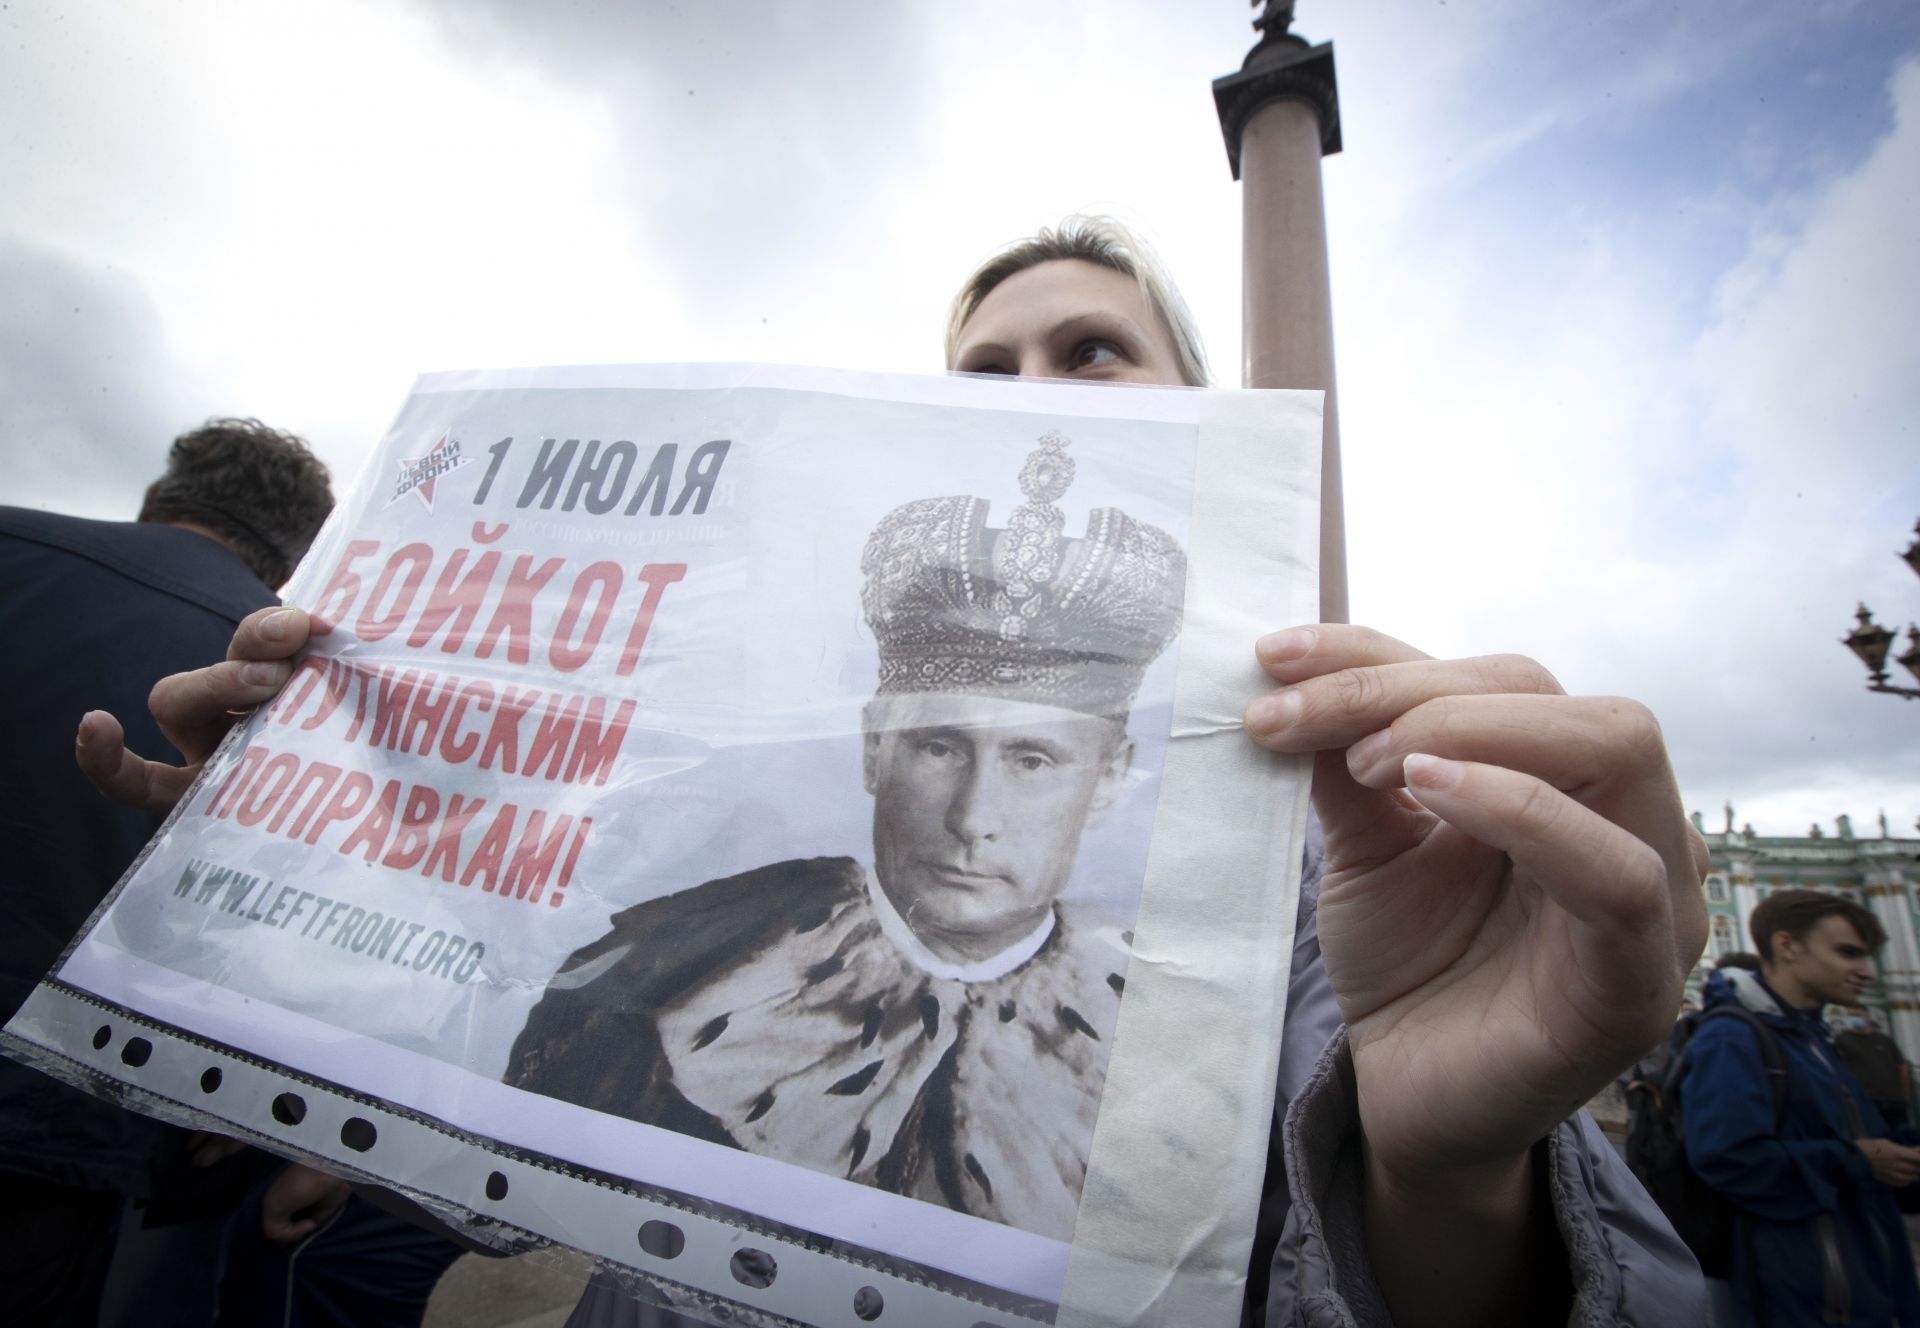 Жена държи плакат с надпис "1 юли. Бойкот на измененията на Путин" протестира на площад "Дворец" в Санкт Петербург